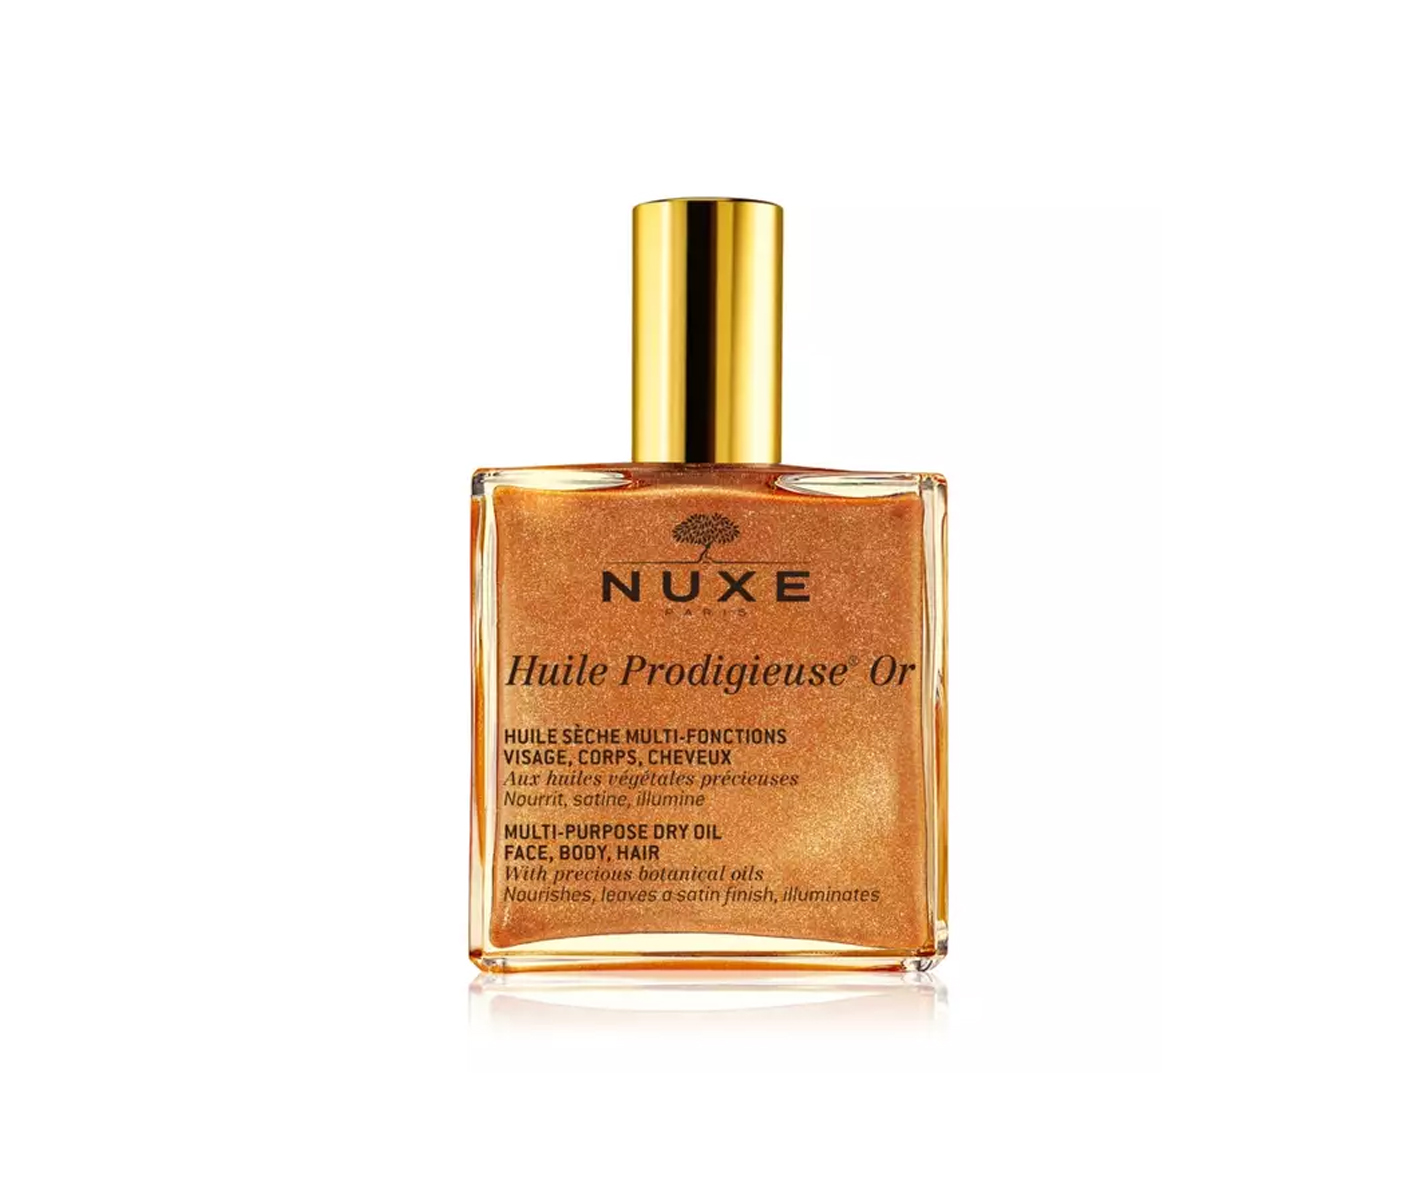 Nuxe, Huile Prodigieuse Or, rozświetlający olejek do twarzy, ciała i włosów